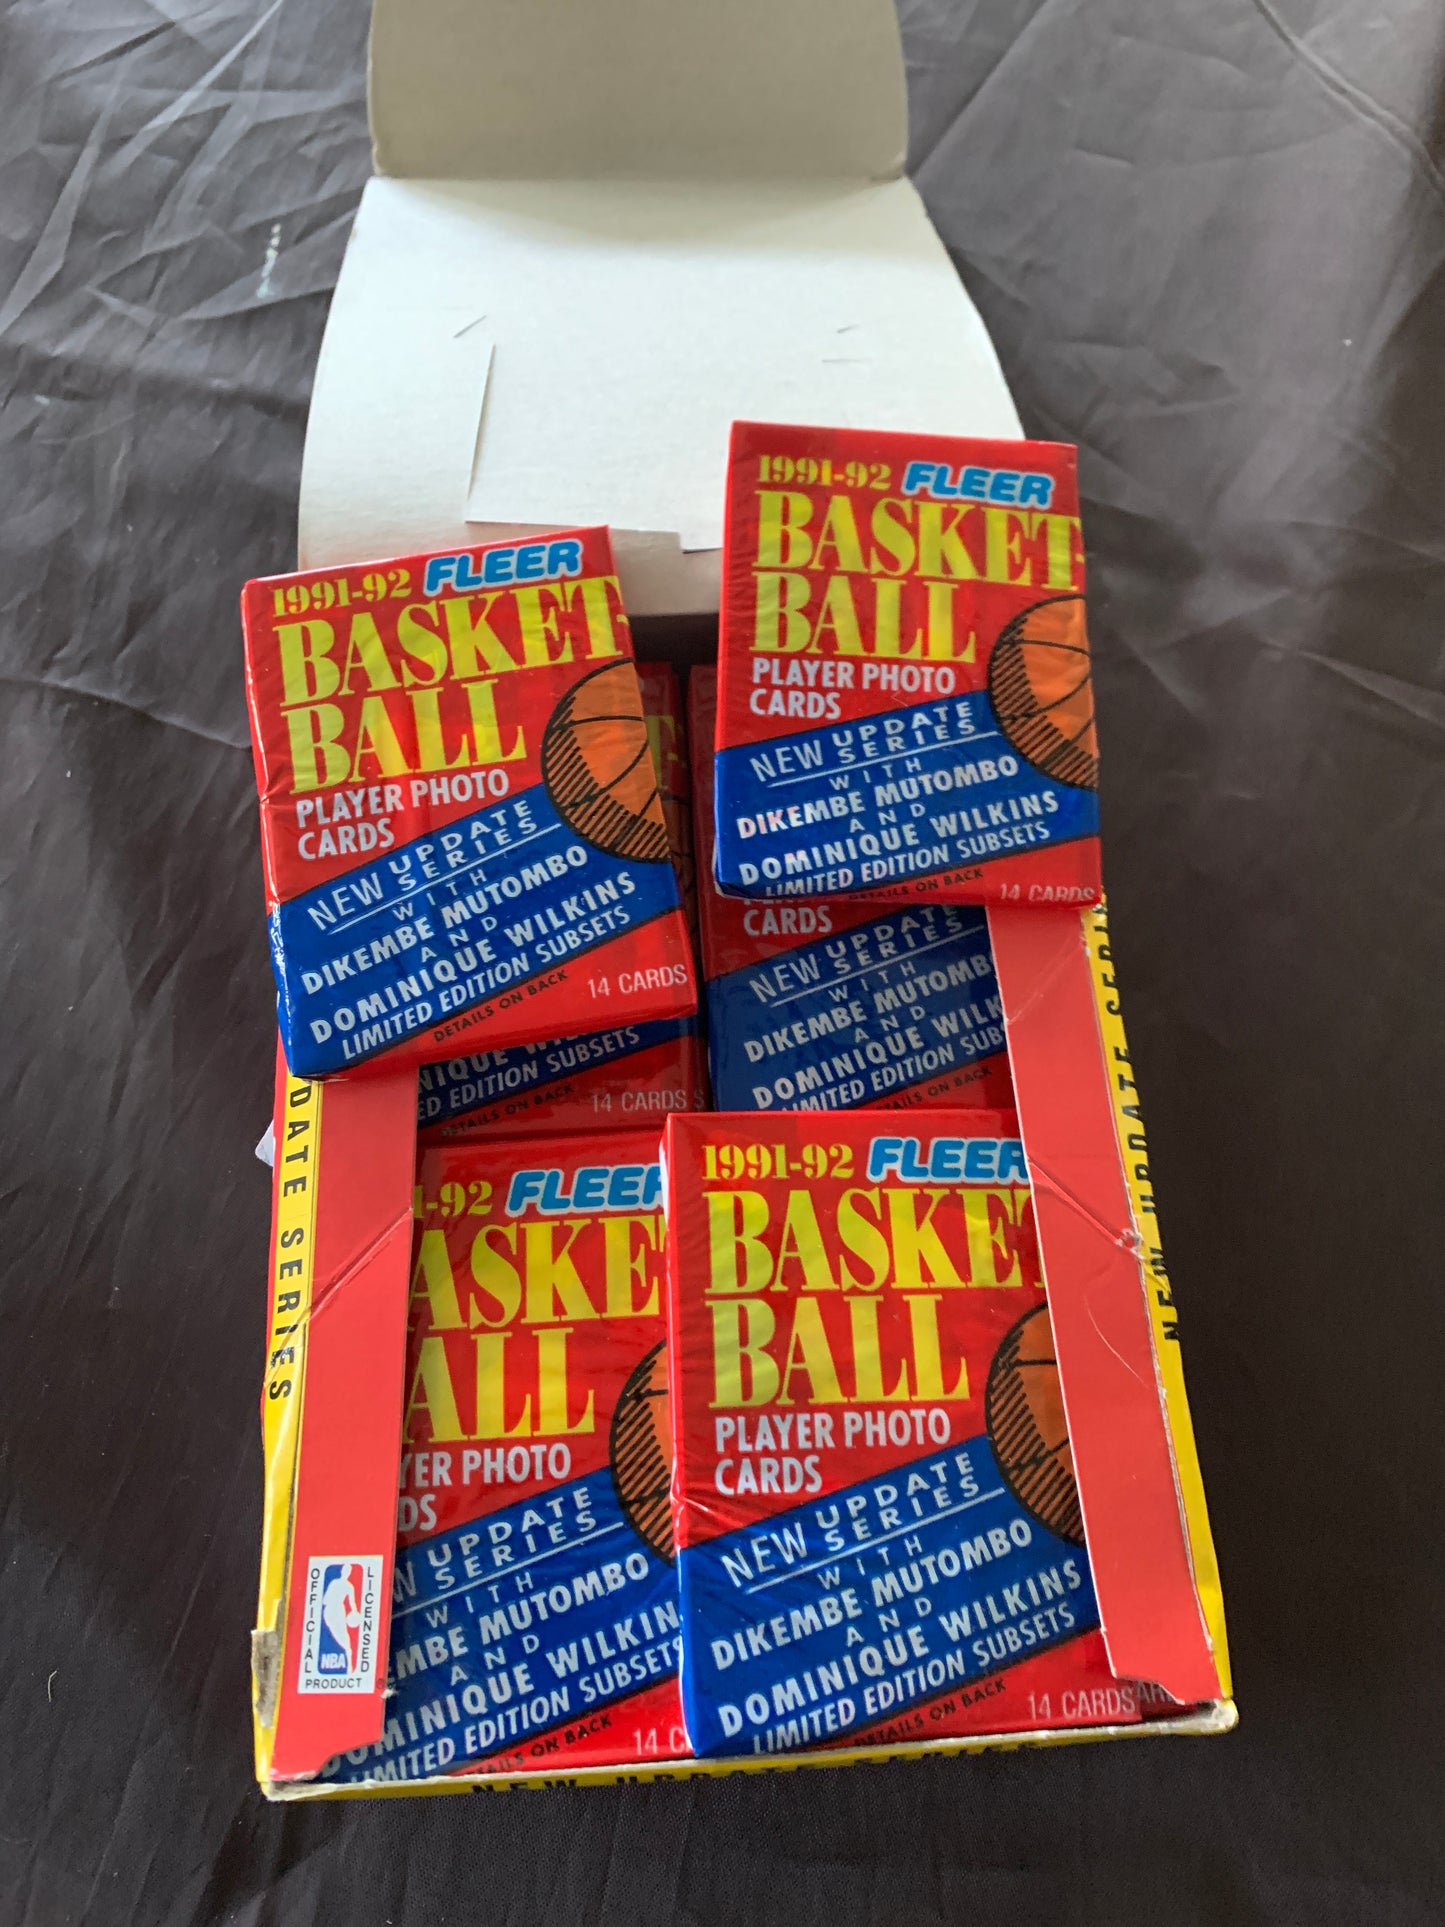 1991-92 Fleer Basketball Update Series Single Pack For Sale